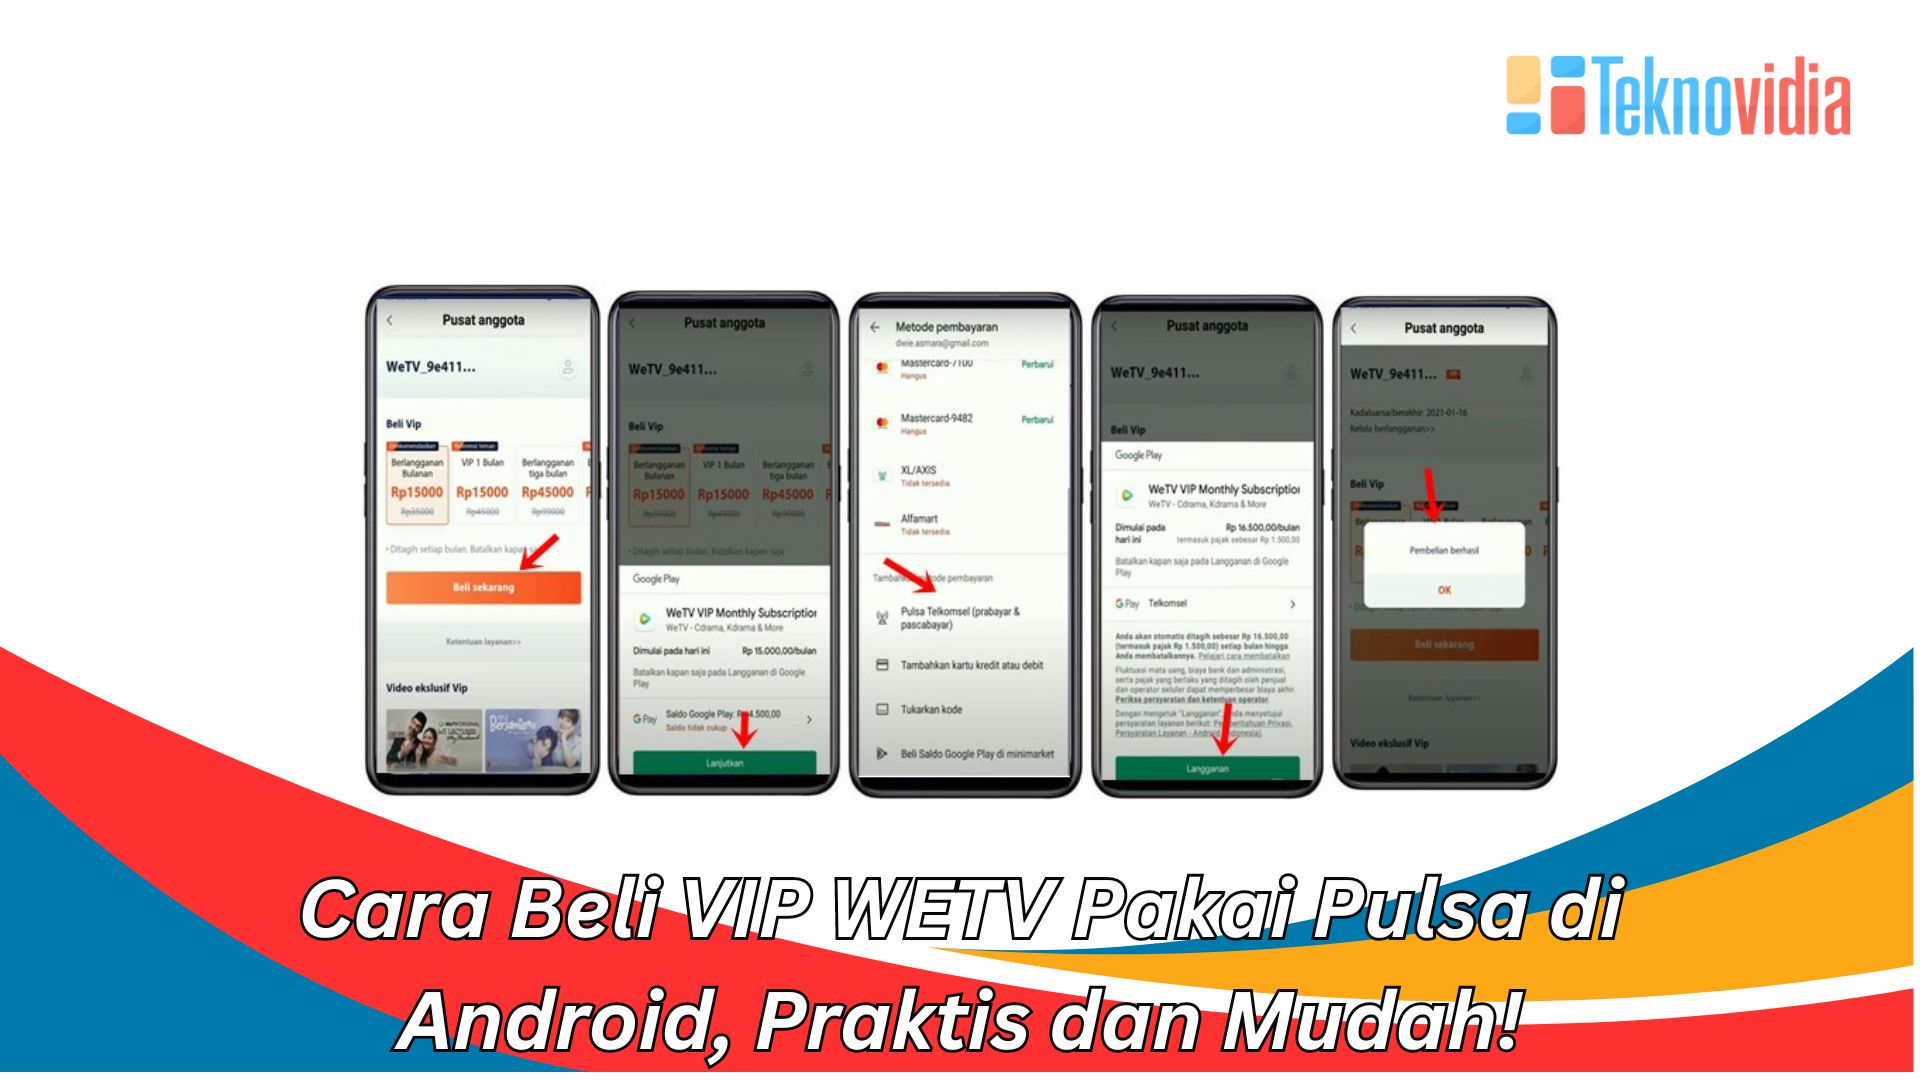 Cara Beli VIP WETV Pakai Pulsa di Android, Praktis dan Mudah!